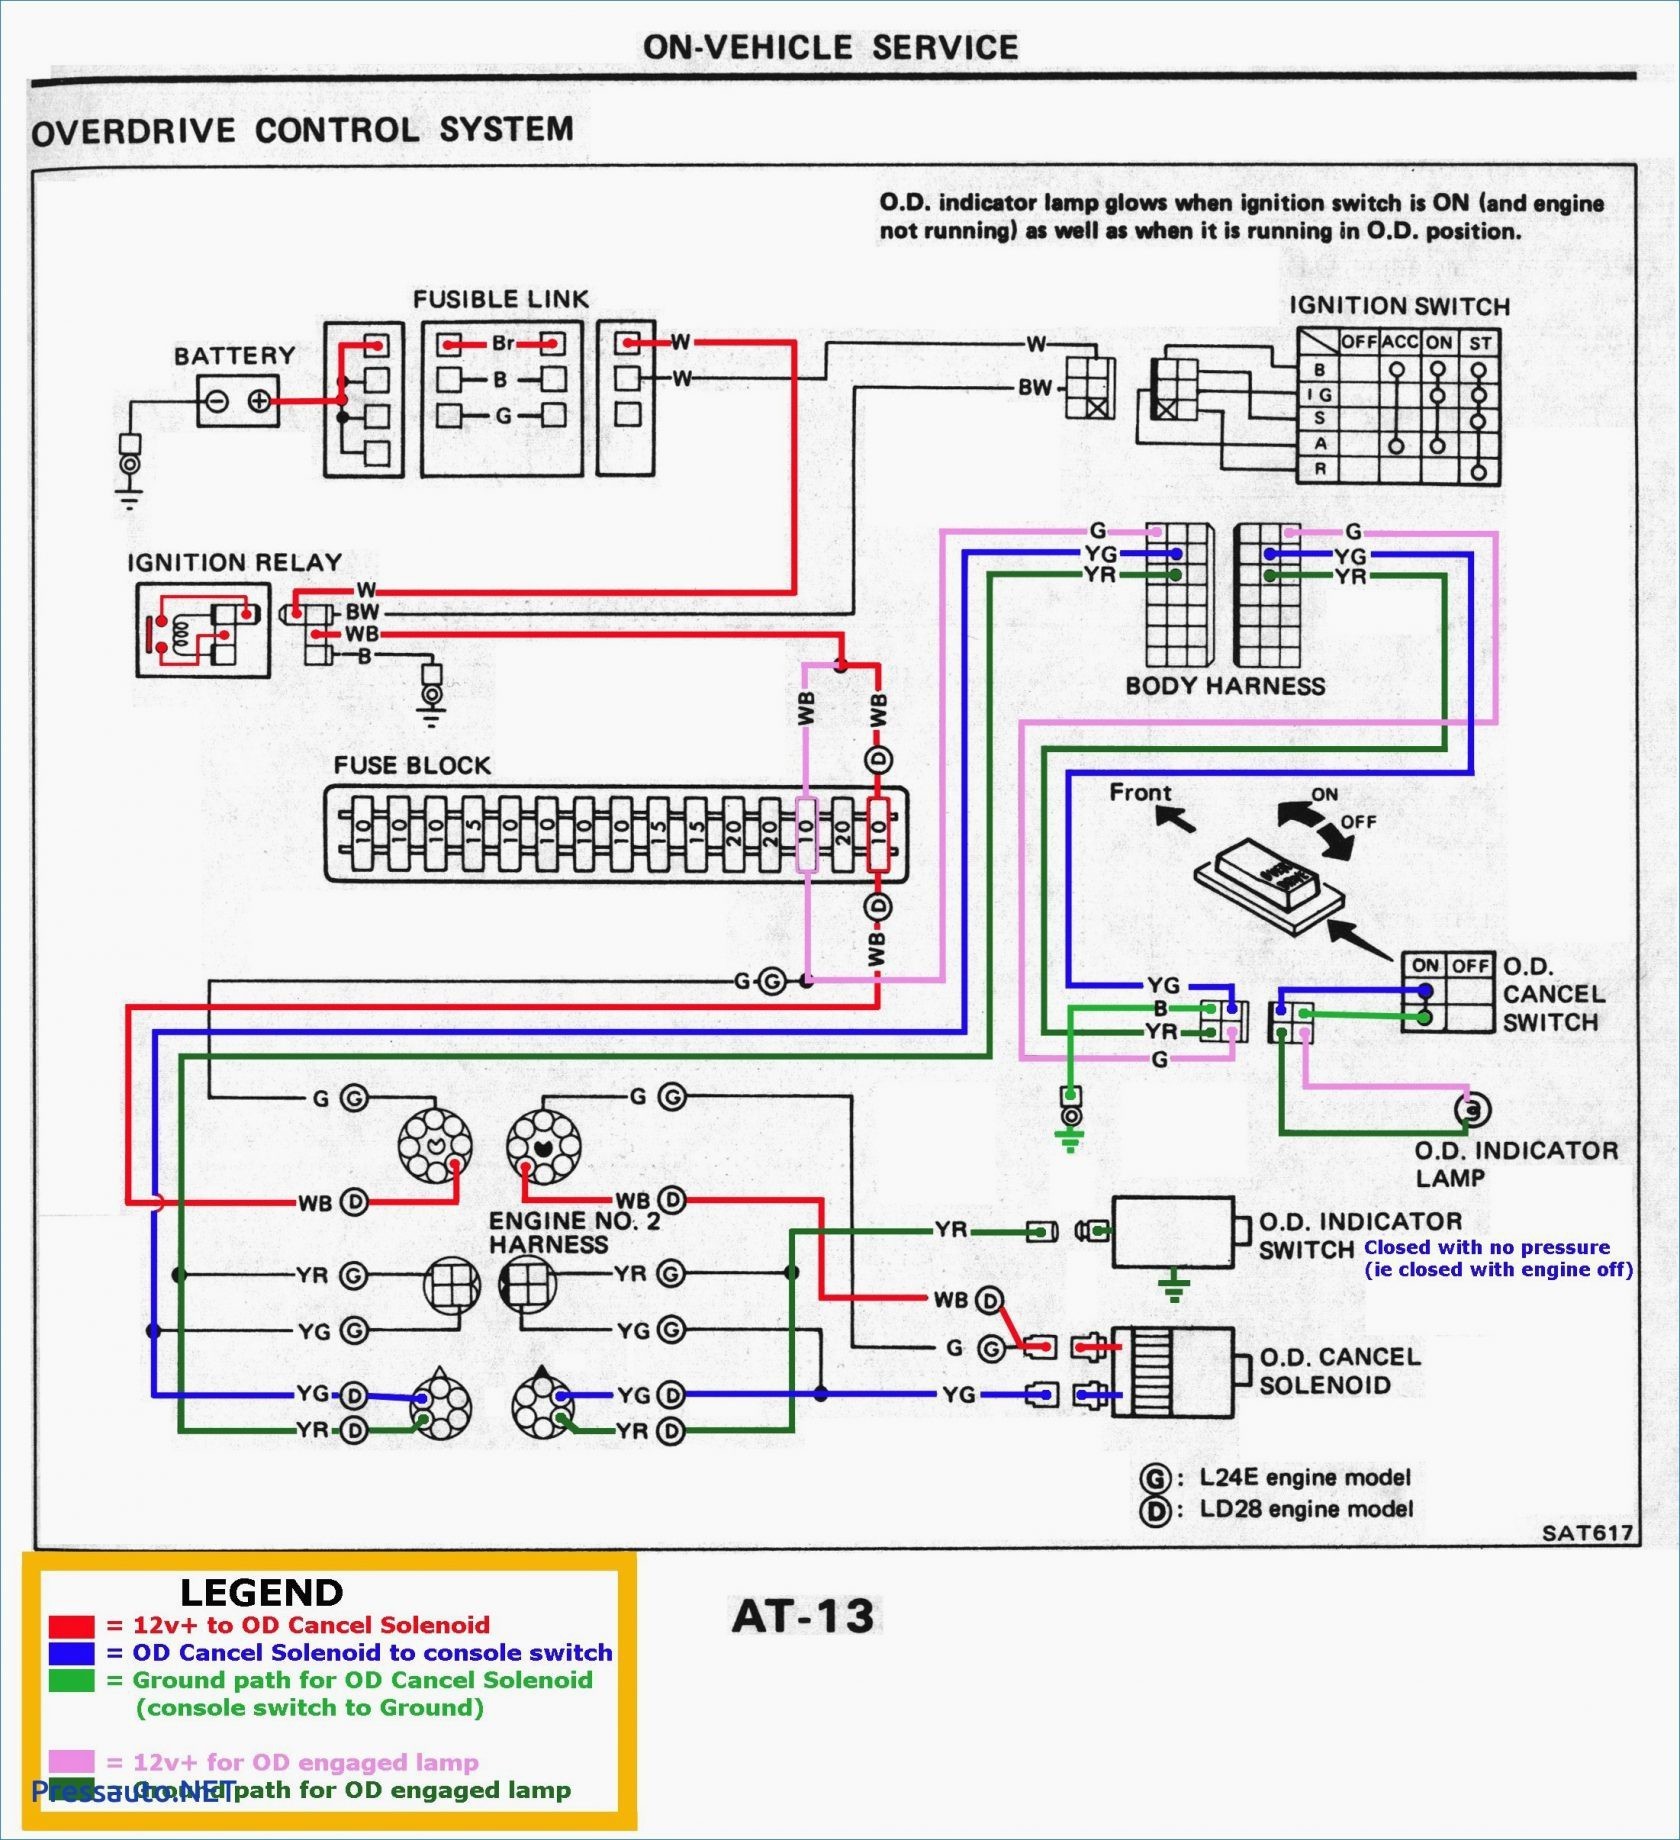 Toyota 3 0 V6 Engine Diagram toyota 3 0 Wiring Diagram Wiring Diagram Data Val Of Toyota 3 0 V6 Engine Diagram